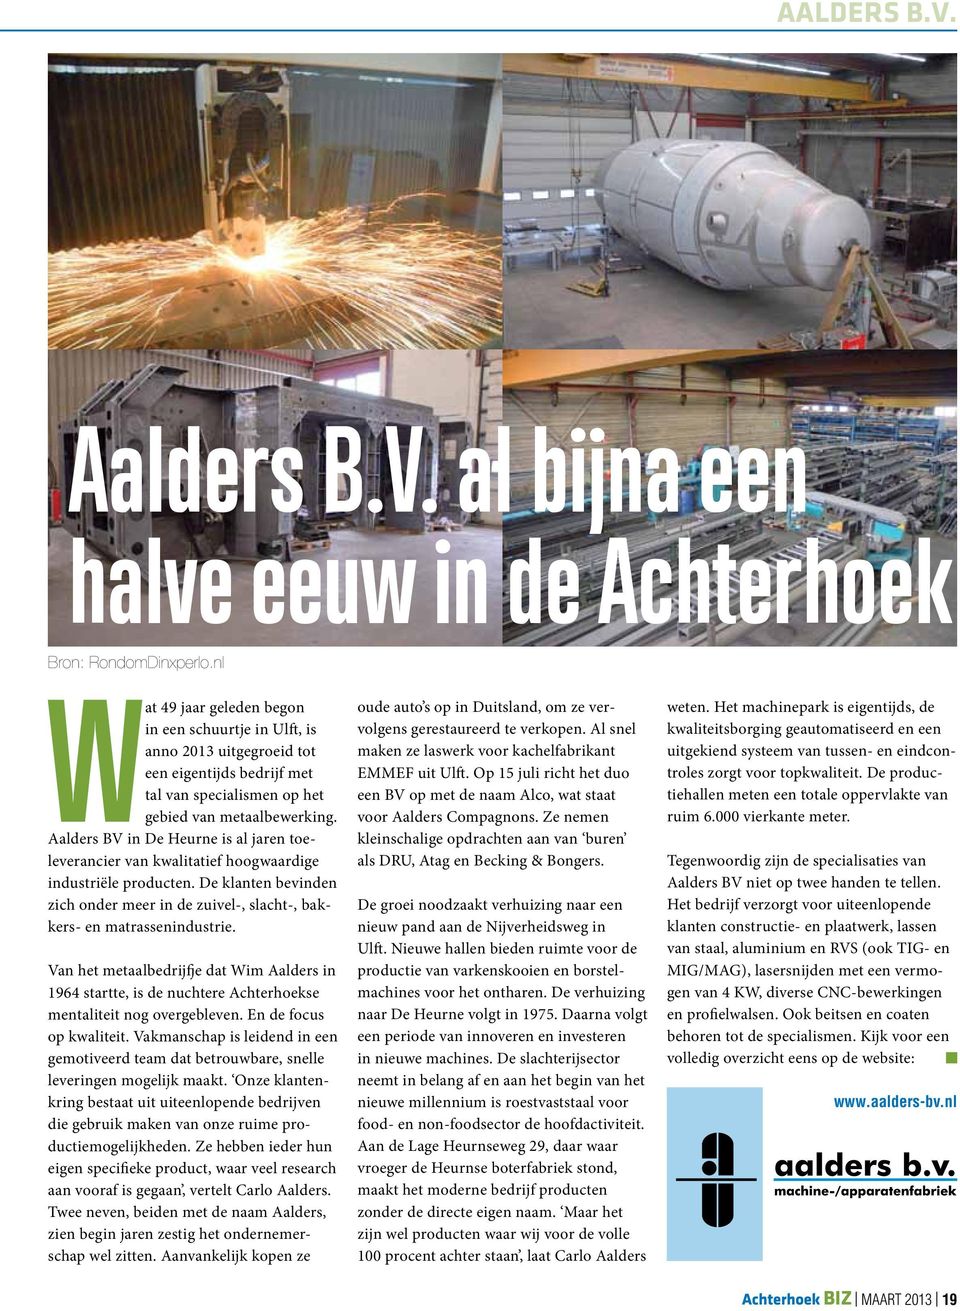 Aalders BV in De Heurne is al jaren toeleverancier van kwalitatief hoogwaardige industriële producten. De klanten bevinden zich onder meer in de zuivel-, slacht-, bakkers- en matrassenindustrie.